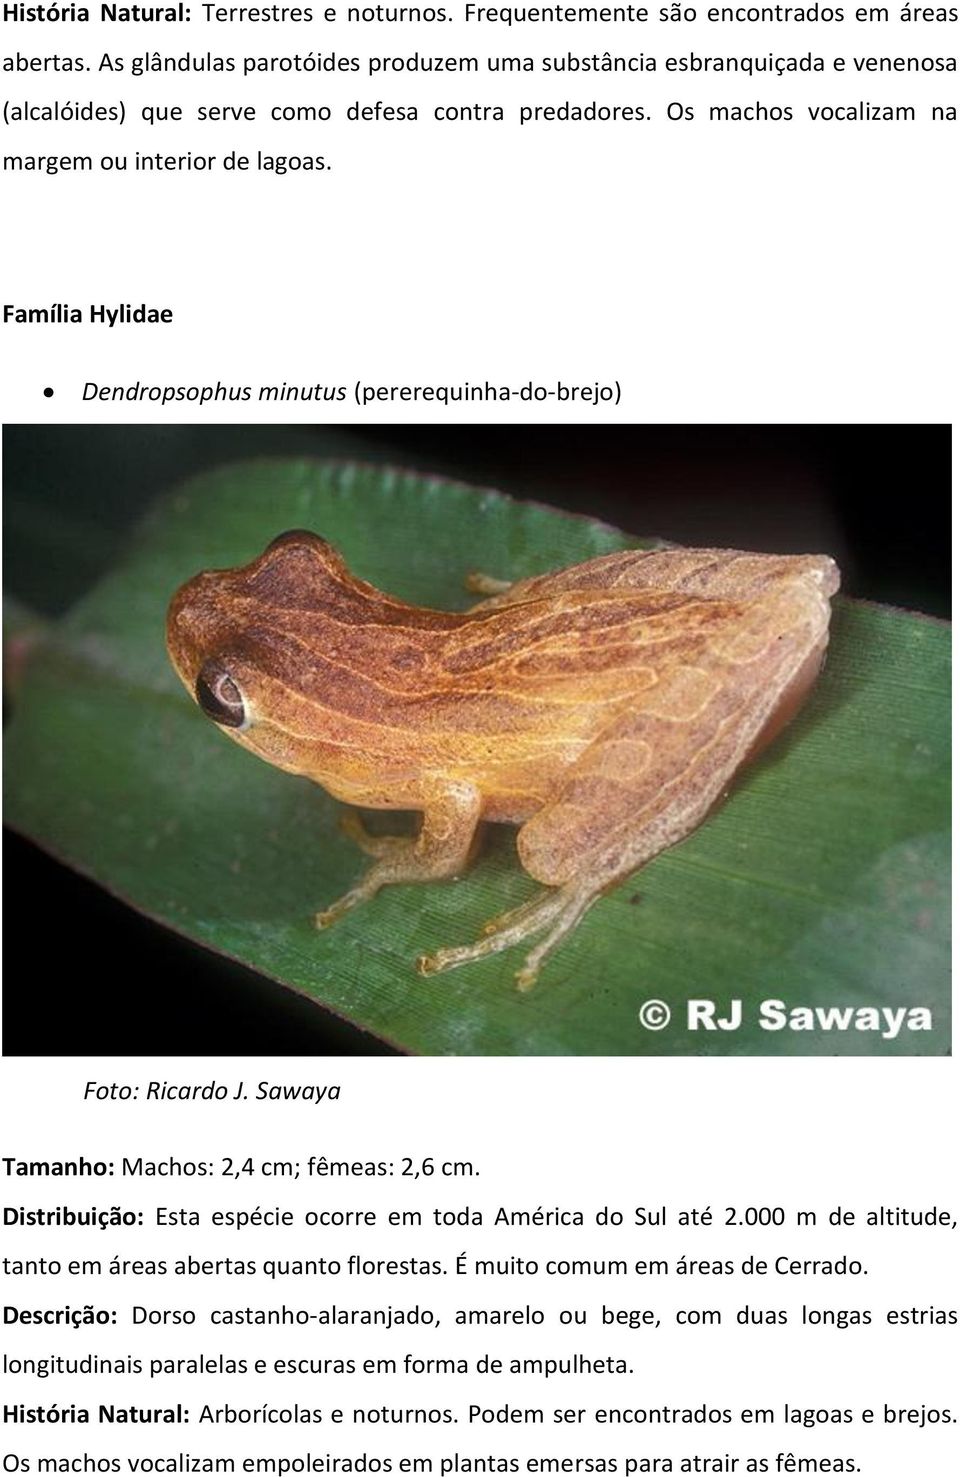 Família Hylidae Dendropsophus minutus (pererequinha-do-brejo) Foto: Ricardo J. Sawaya Tamanho: Machos: 2,4 cm; fêmeas: 2,6 cm. Distribuição: Esta espécie ocorre em toda América do Sul até 2.